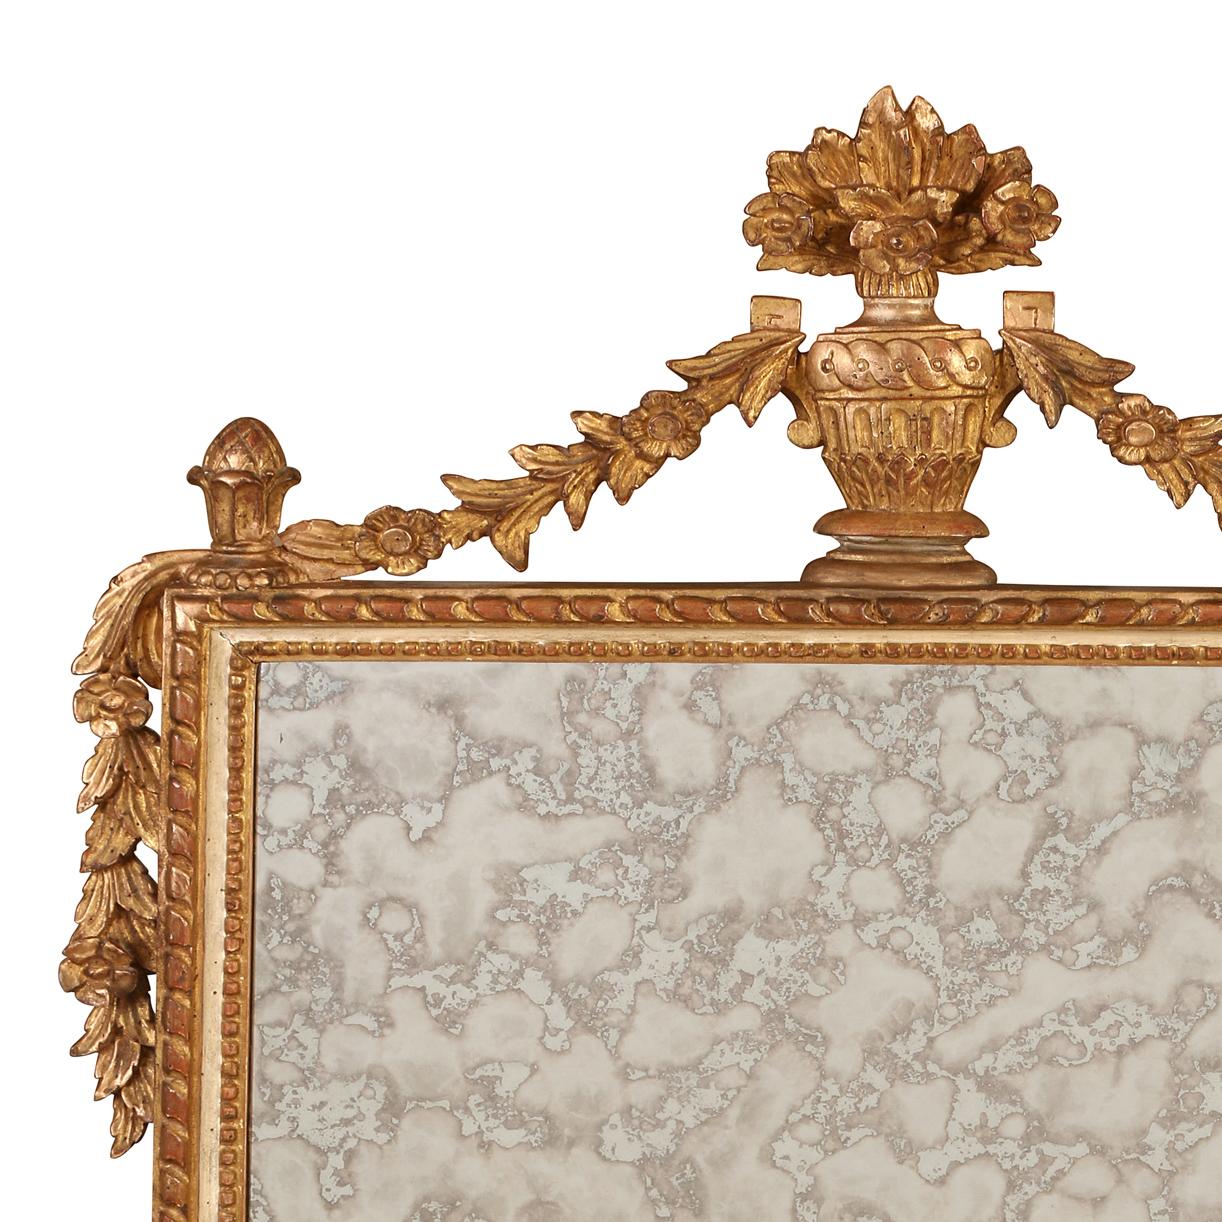 Miroir néoclassique en bois doré avec une urne et des guirlandes au sommet, ce miroir présente un cadre méticuleusement sculpté qui respire la sophistication. La finition dorée ajoute une touche de régalité et d'opulence à la pièce, reflétant la